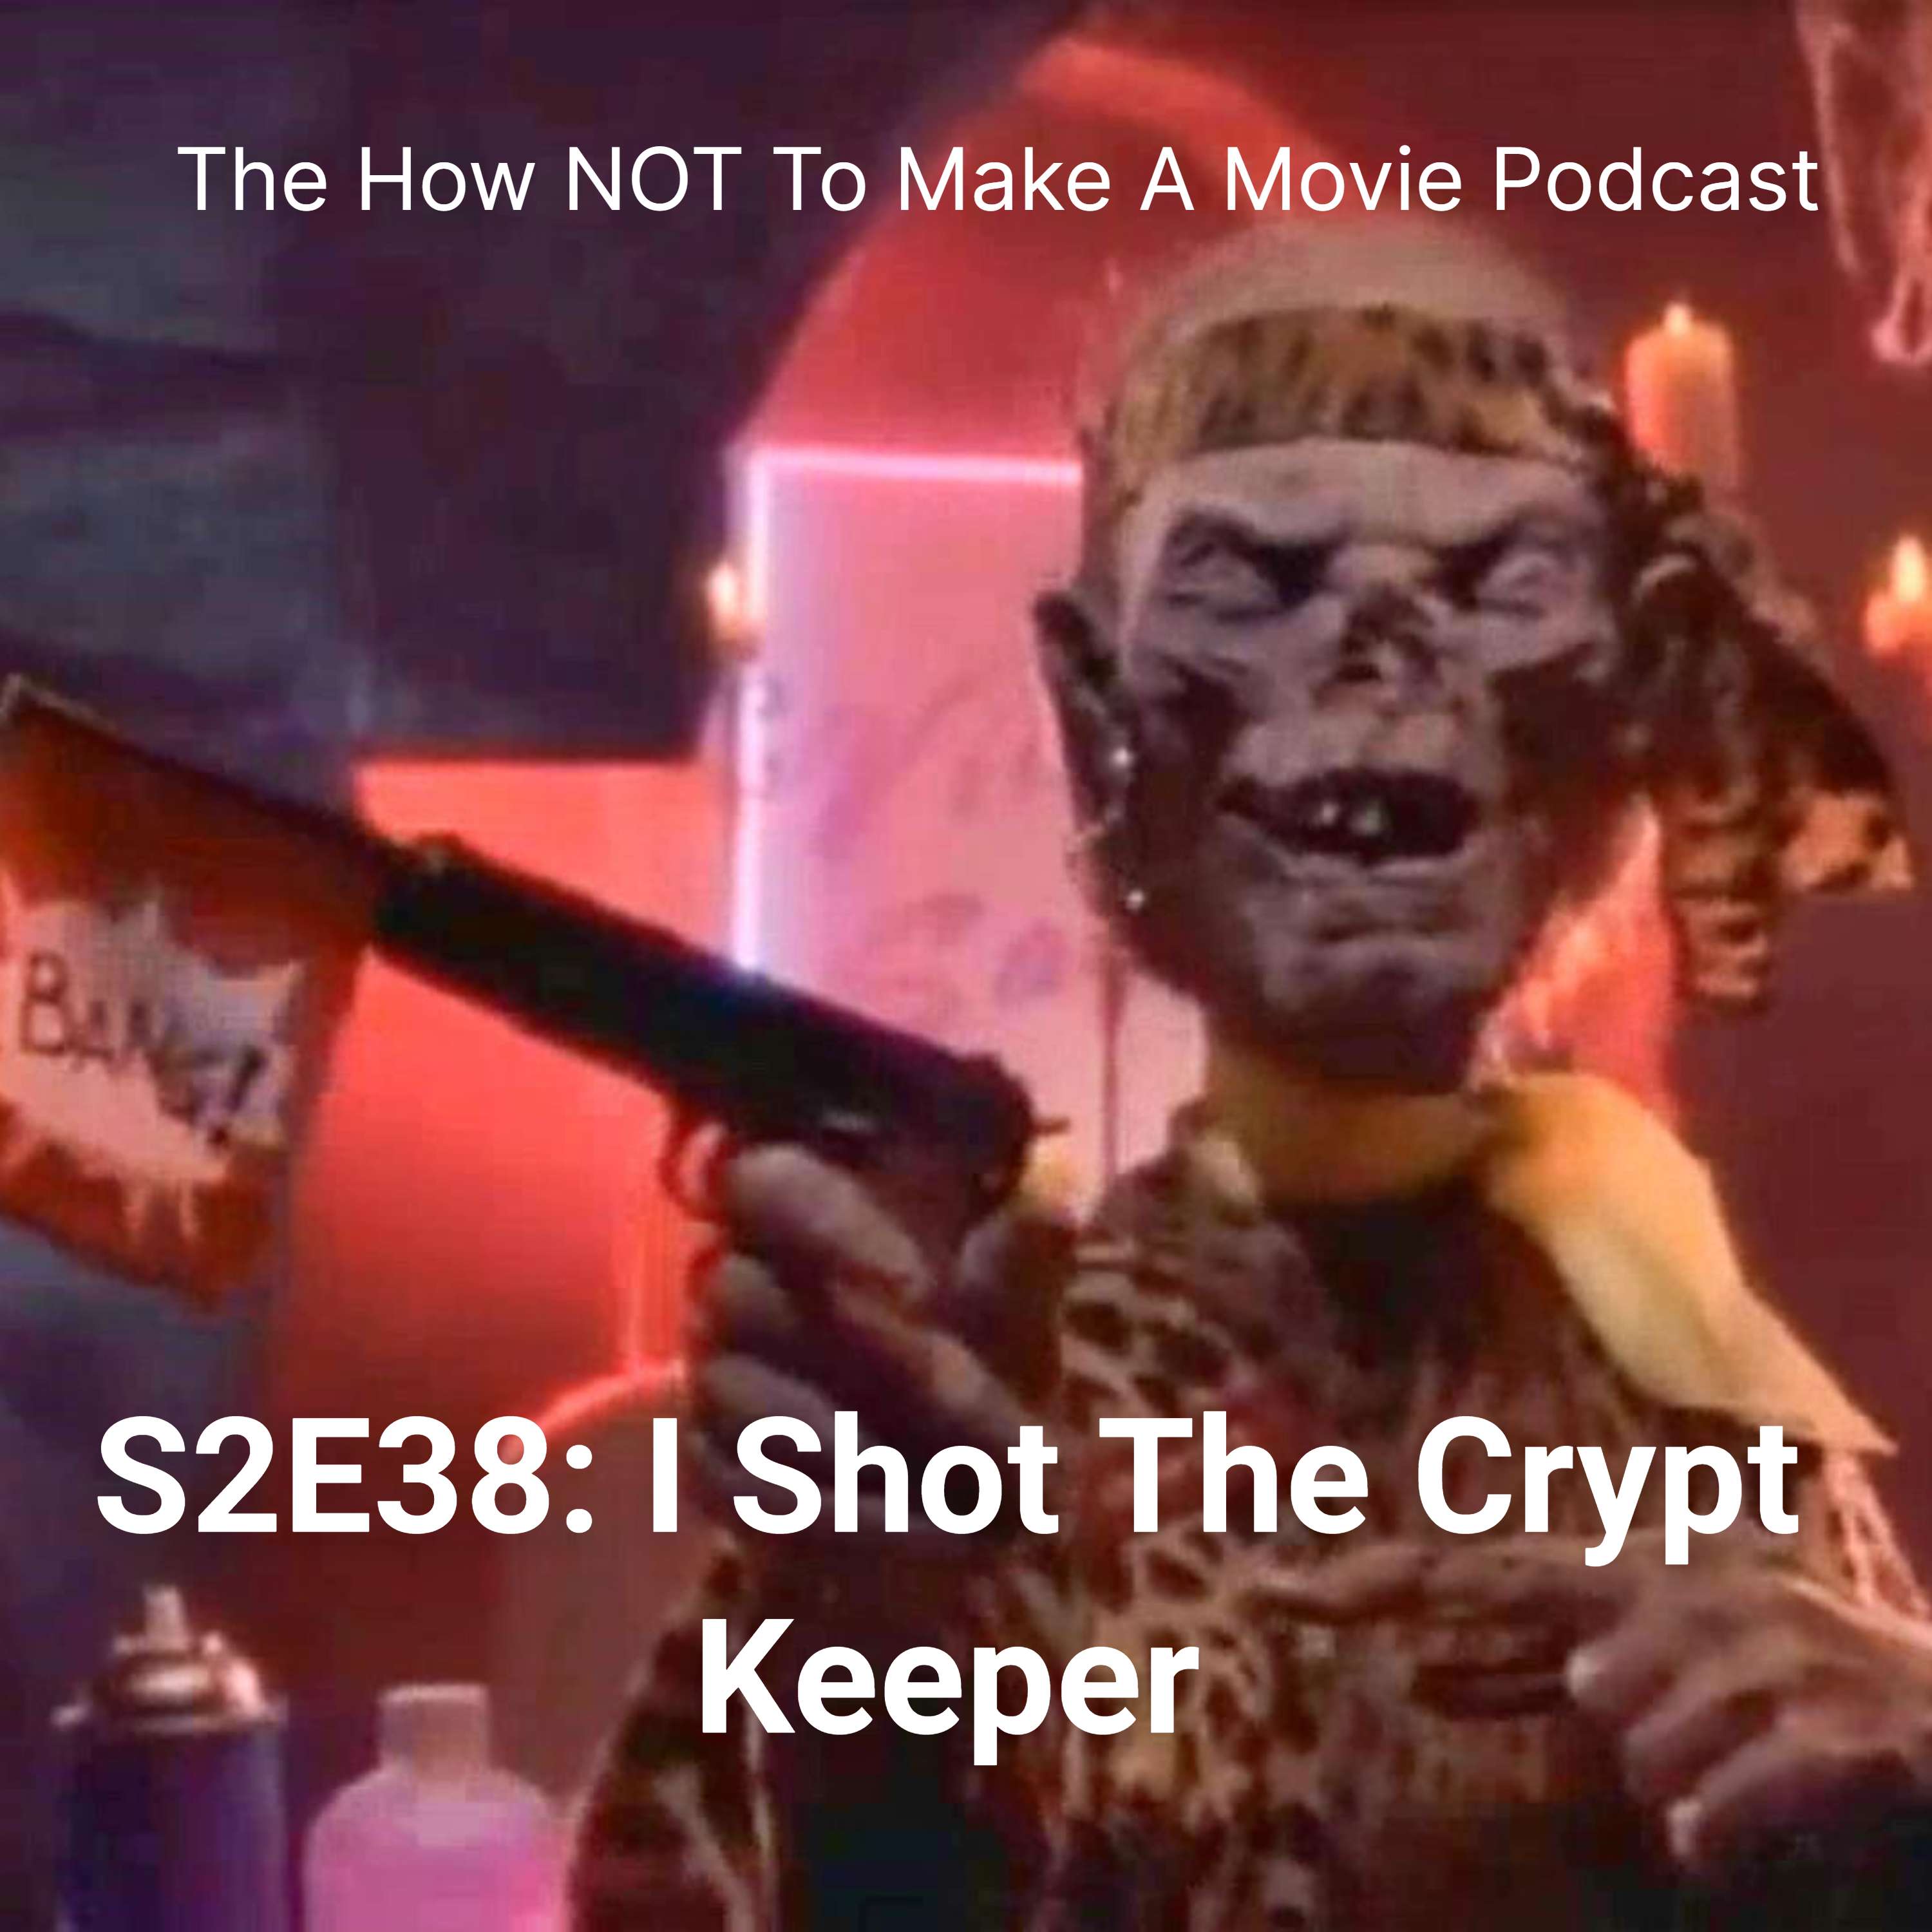 S2E38: "I Shot The Crypt Keeper"